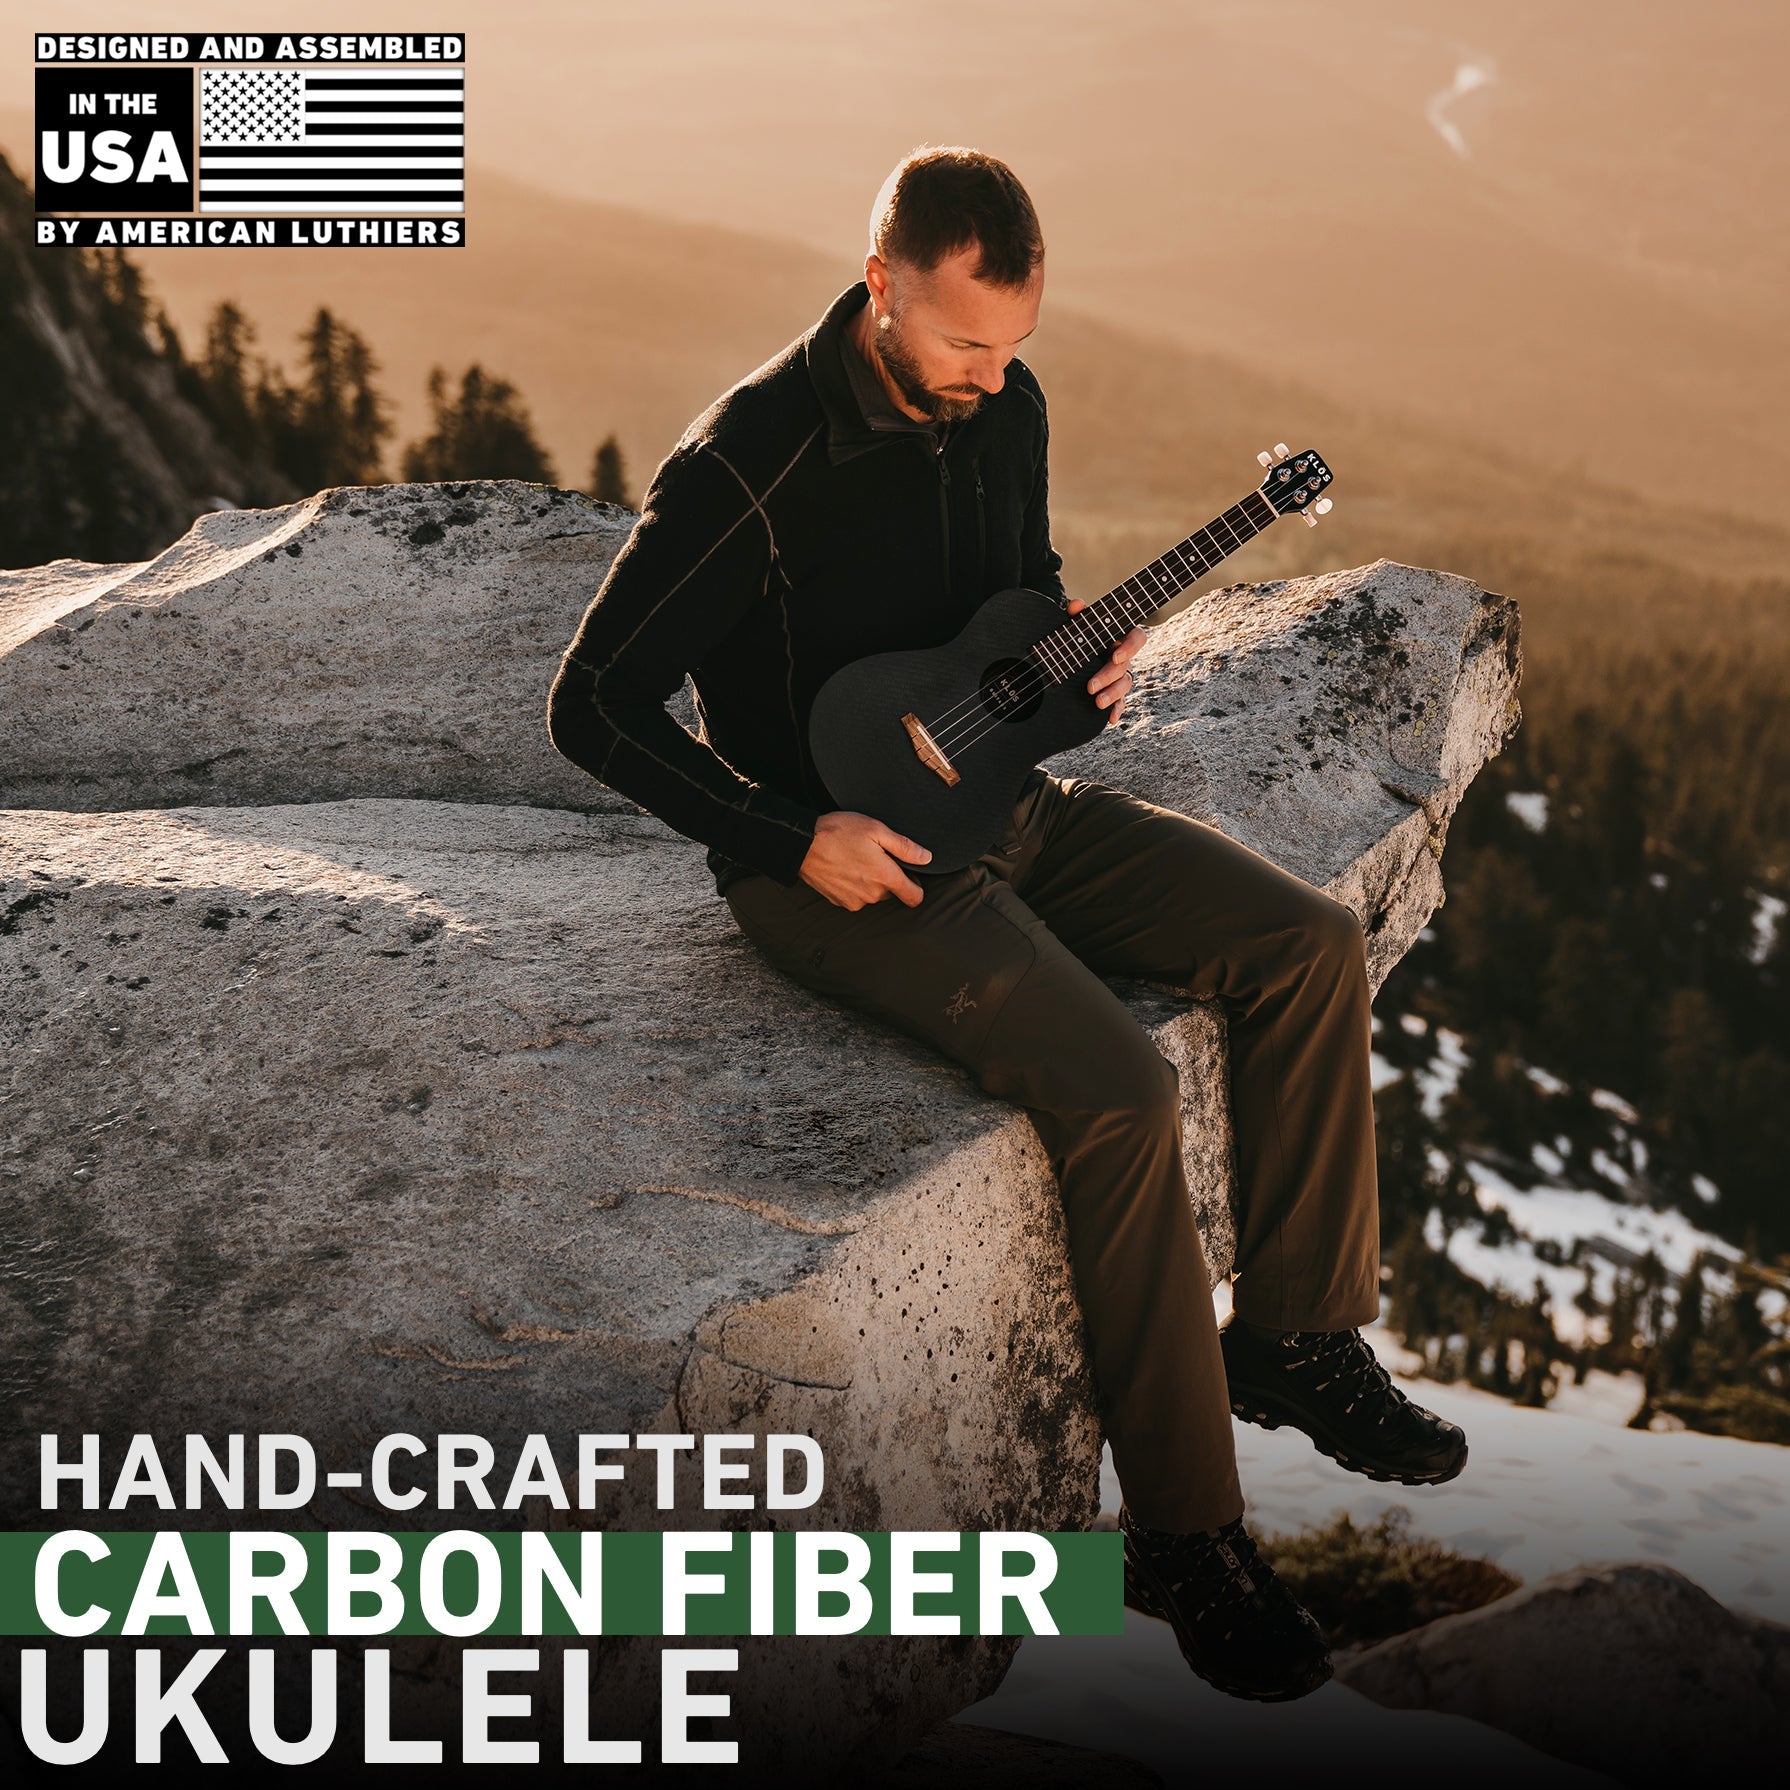 Hand crafted carbon fiber ukulele 